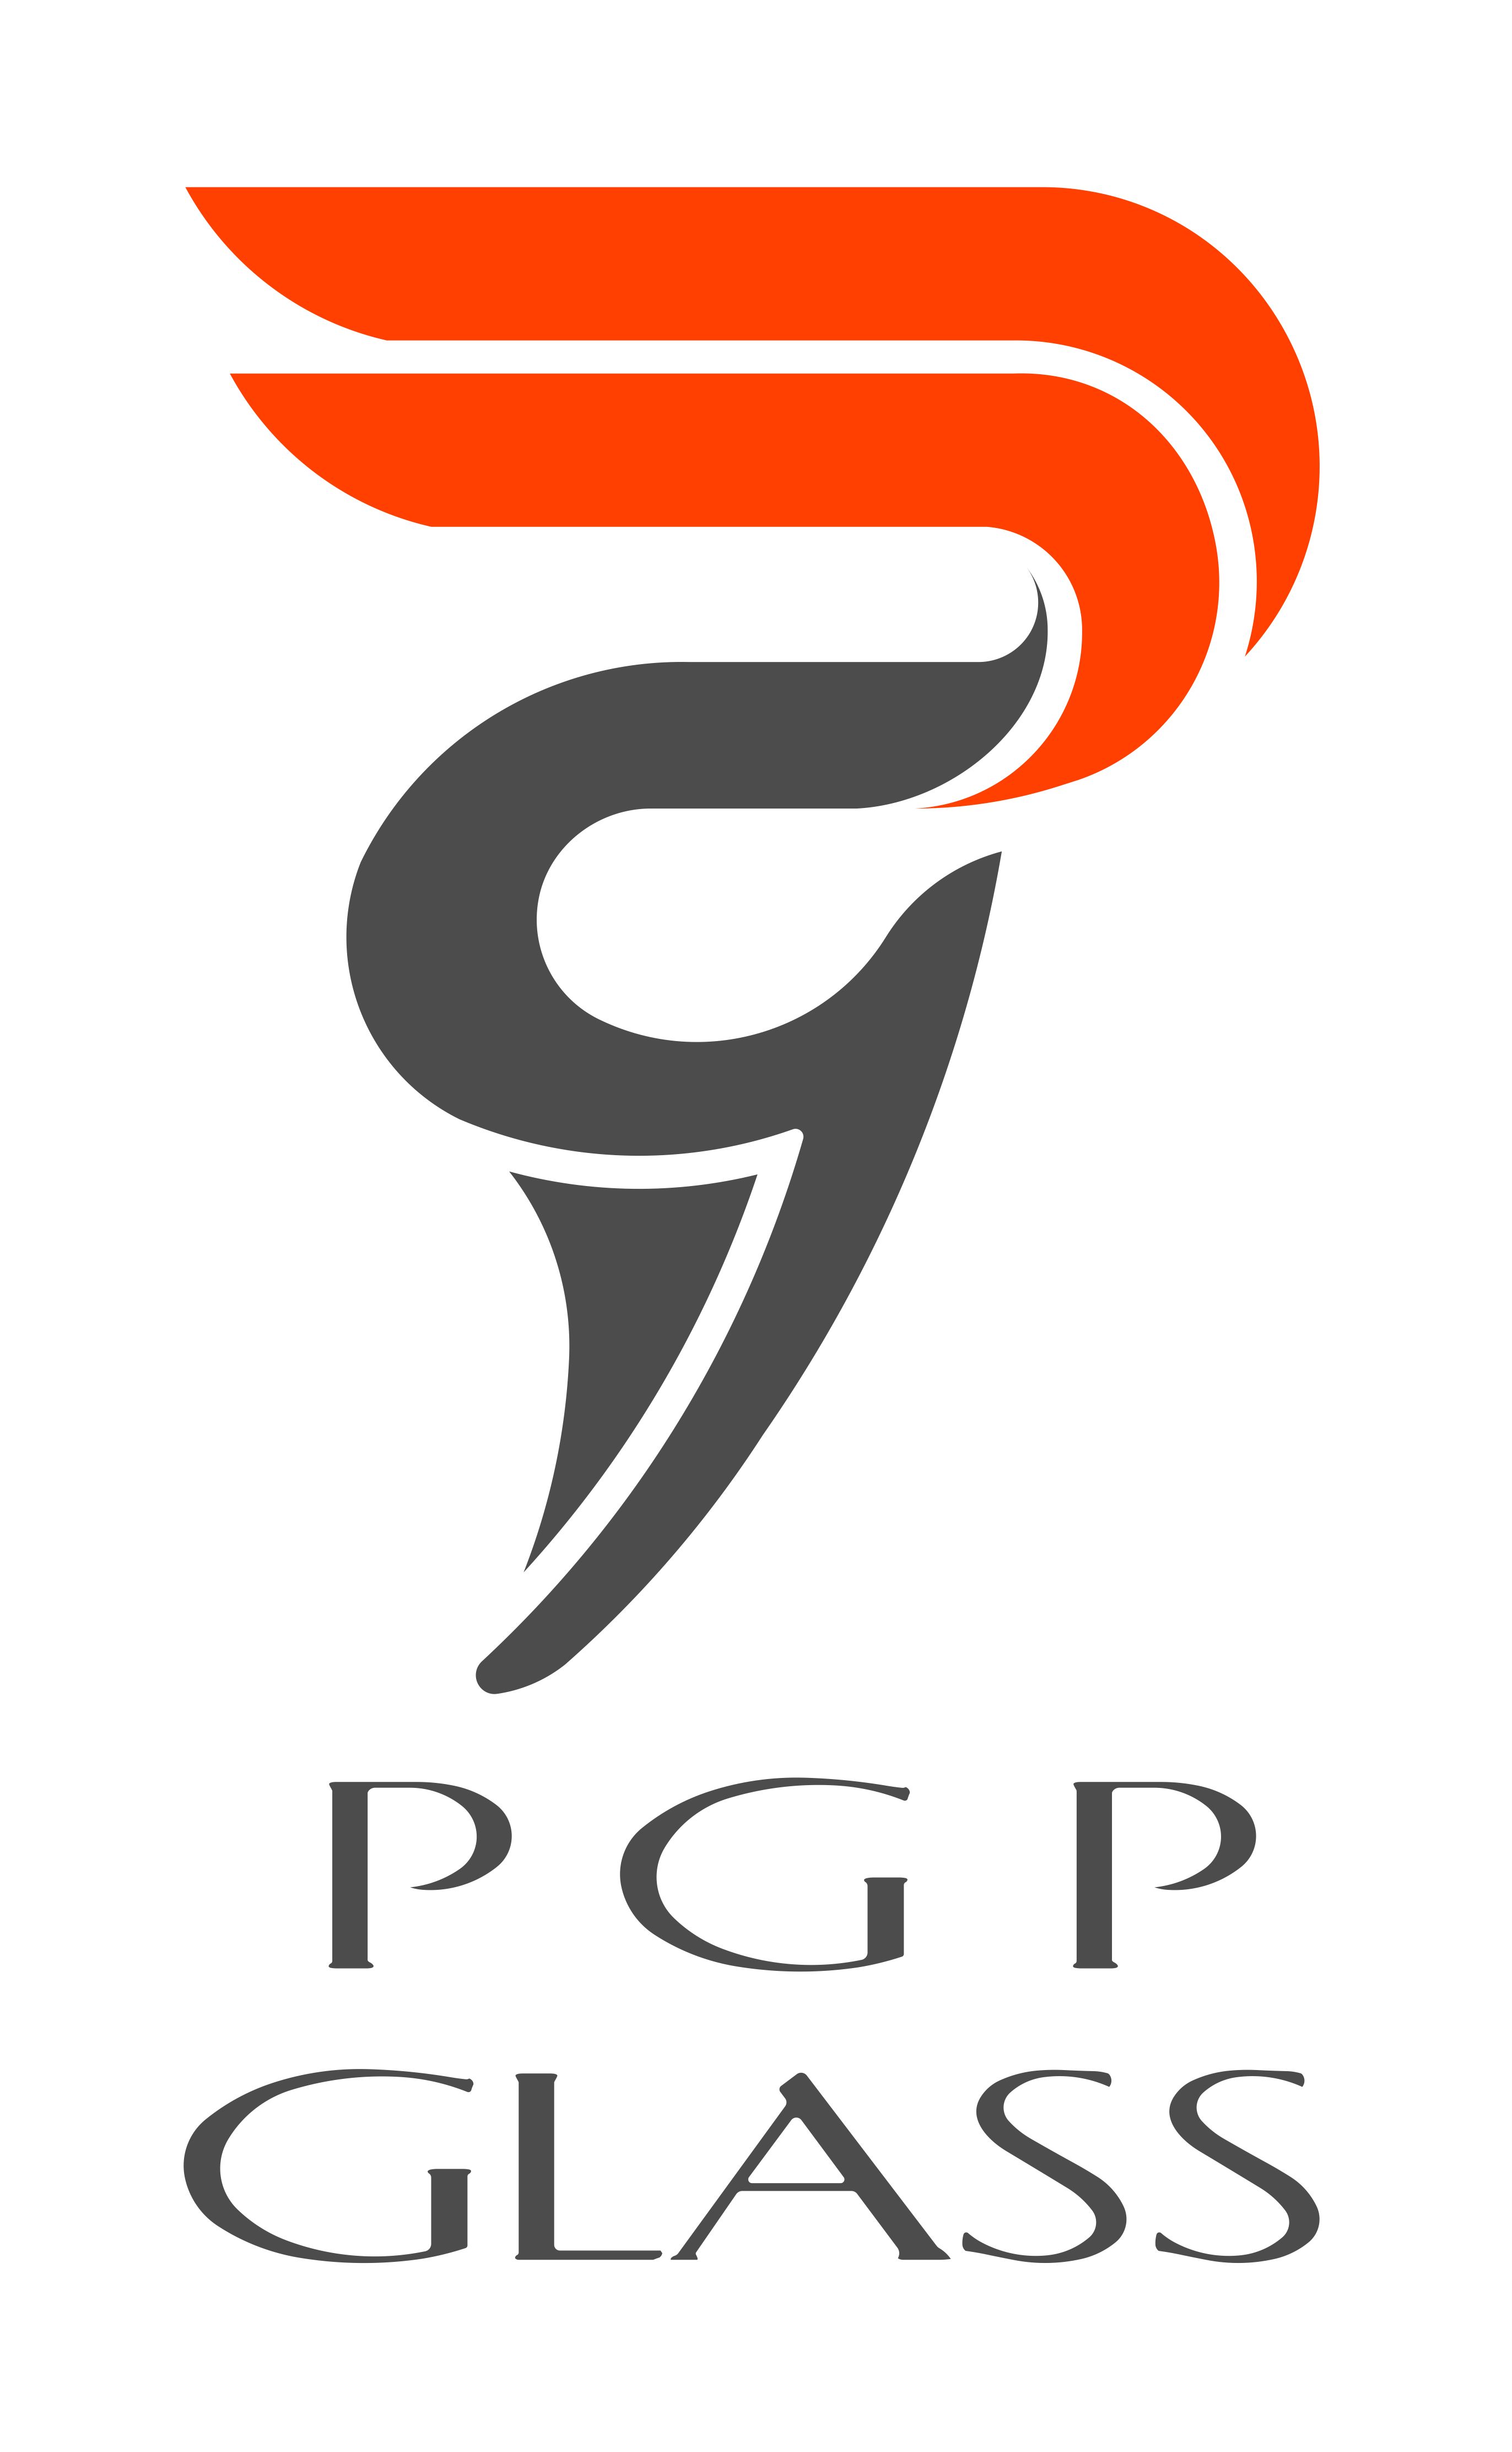 PGP Glass Pvt. Ltd.